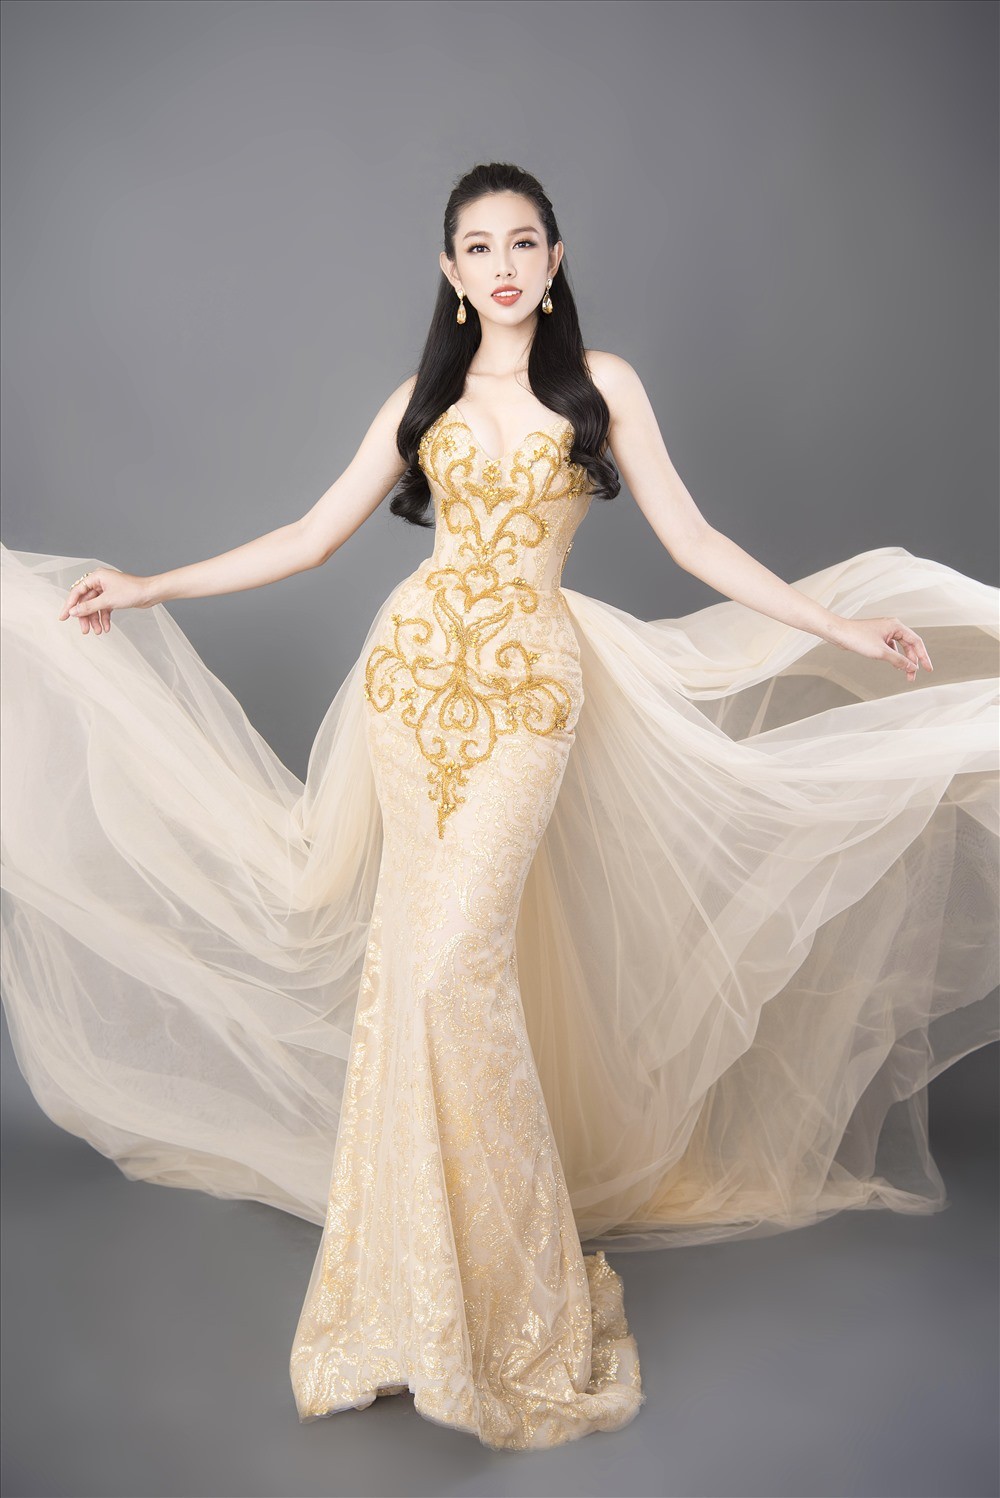 Đọ nhan sắc ba người đẹp từng giành giải 'Người đẹp Nhân ái' tại Hoa hậu Việt Nam ảnh 7